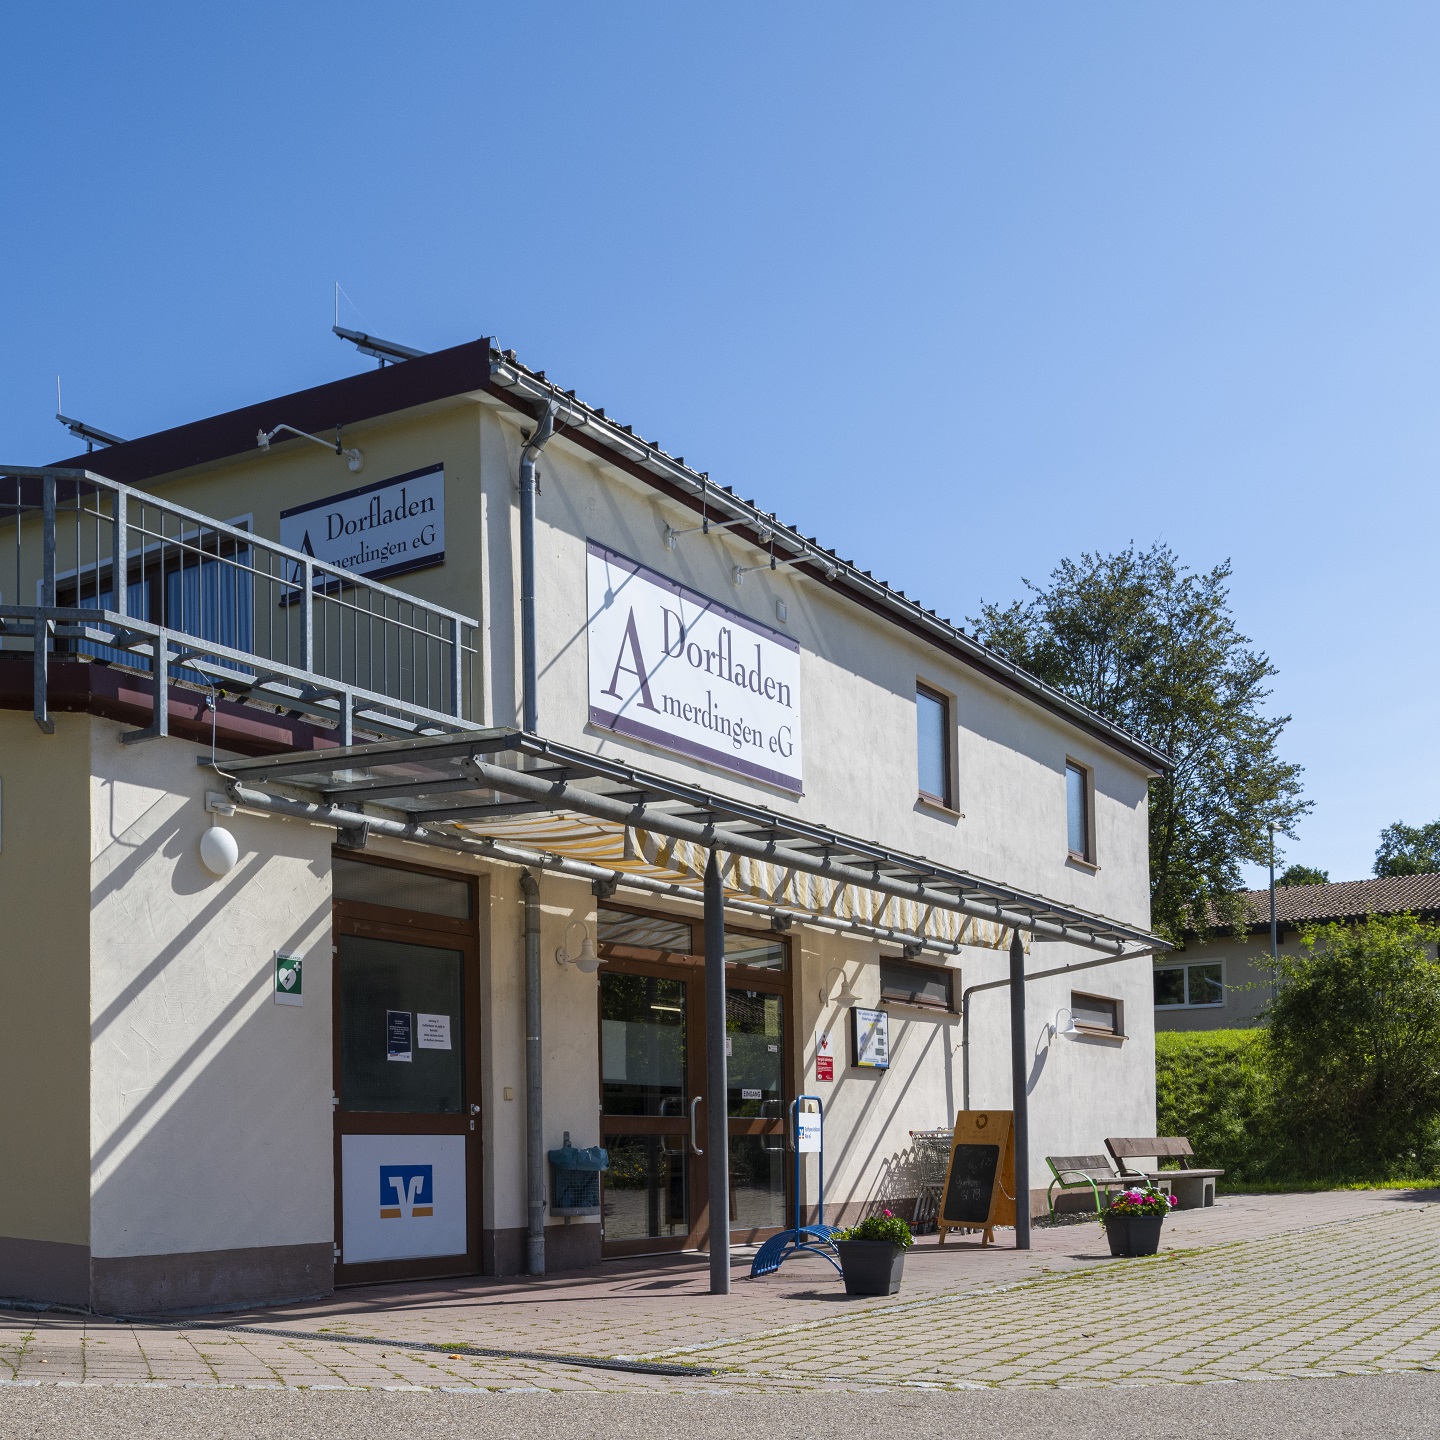 Sparkasse Bargeld-Service Amerdingen Dorfladen